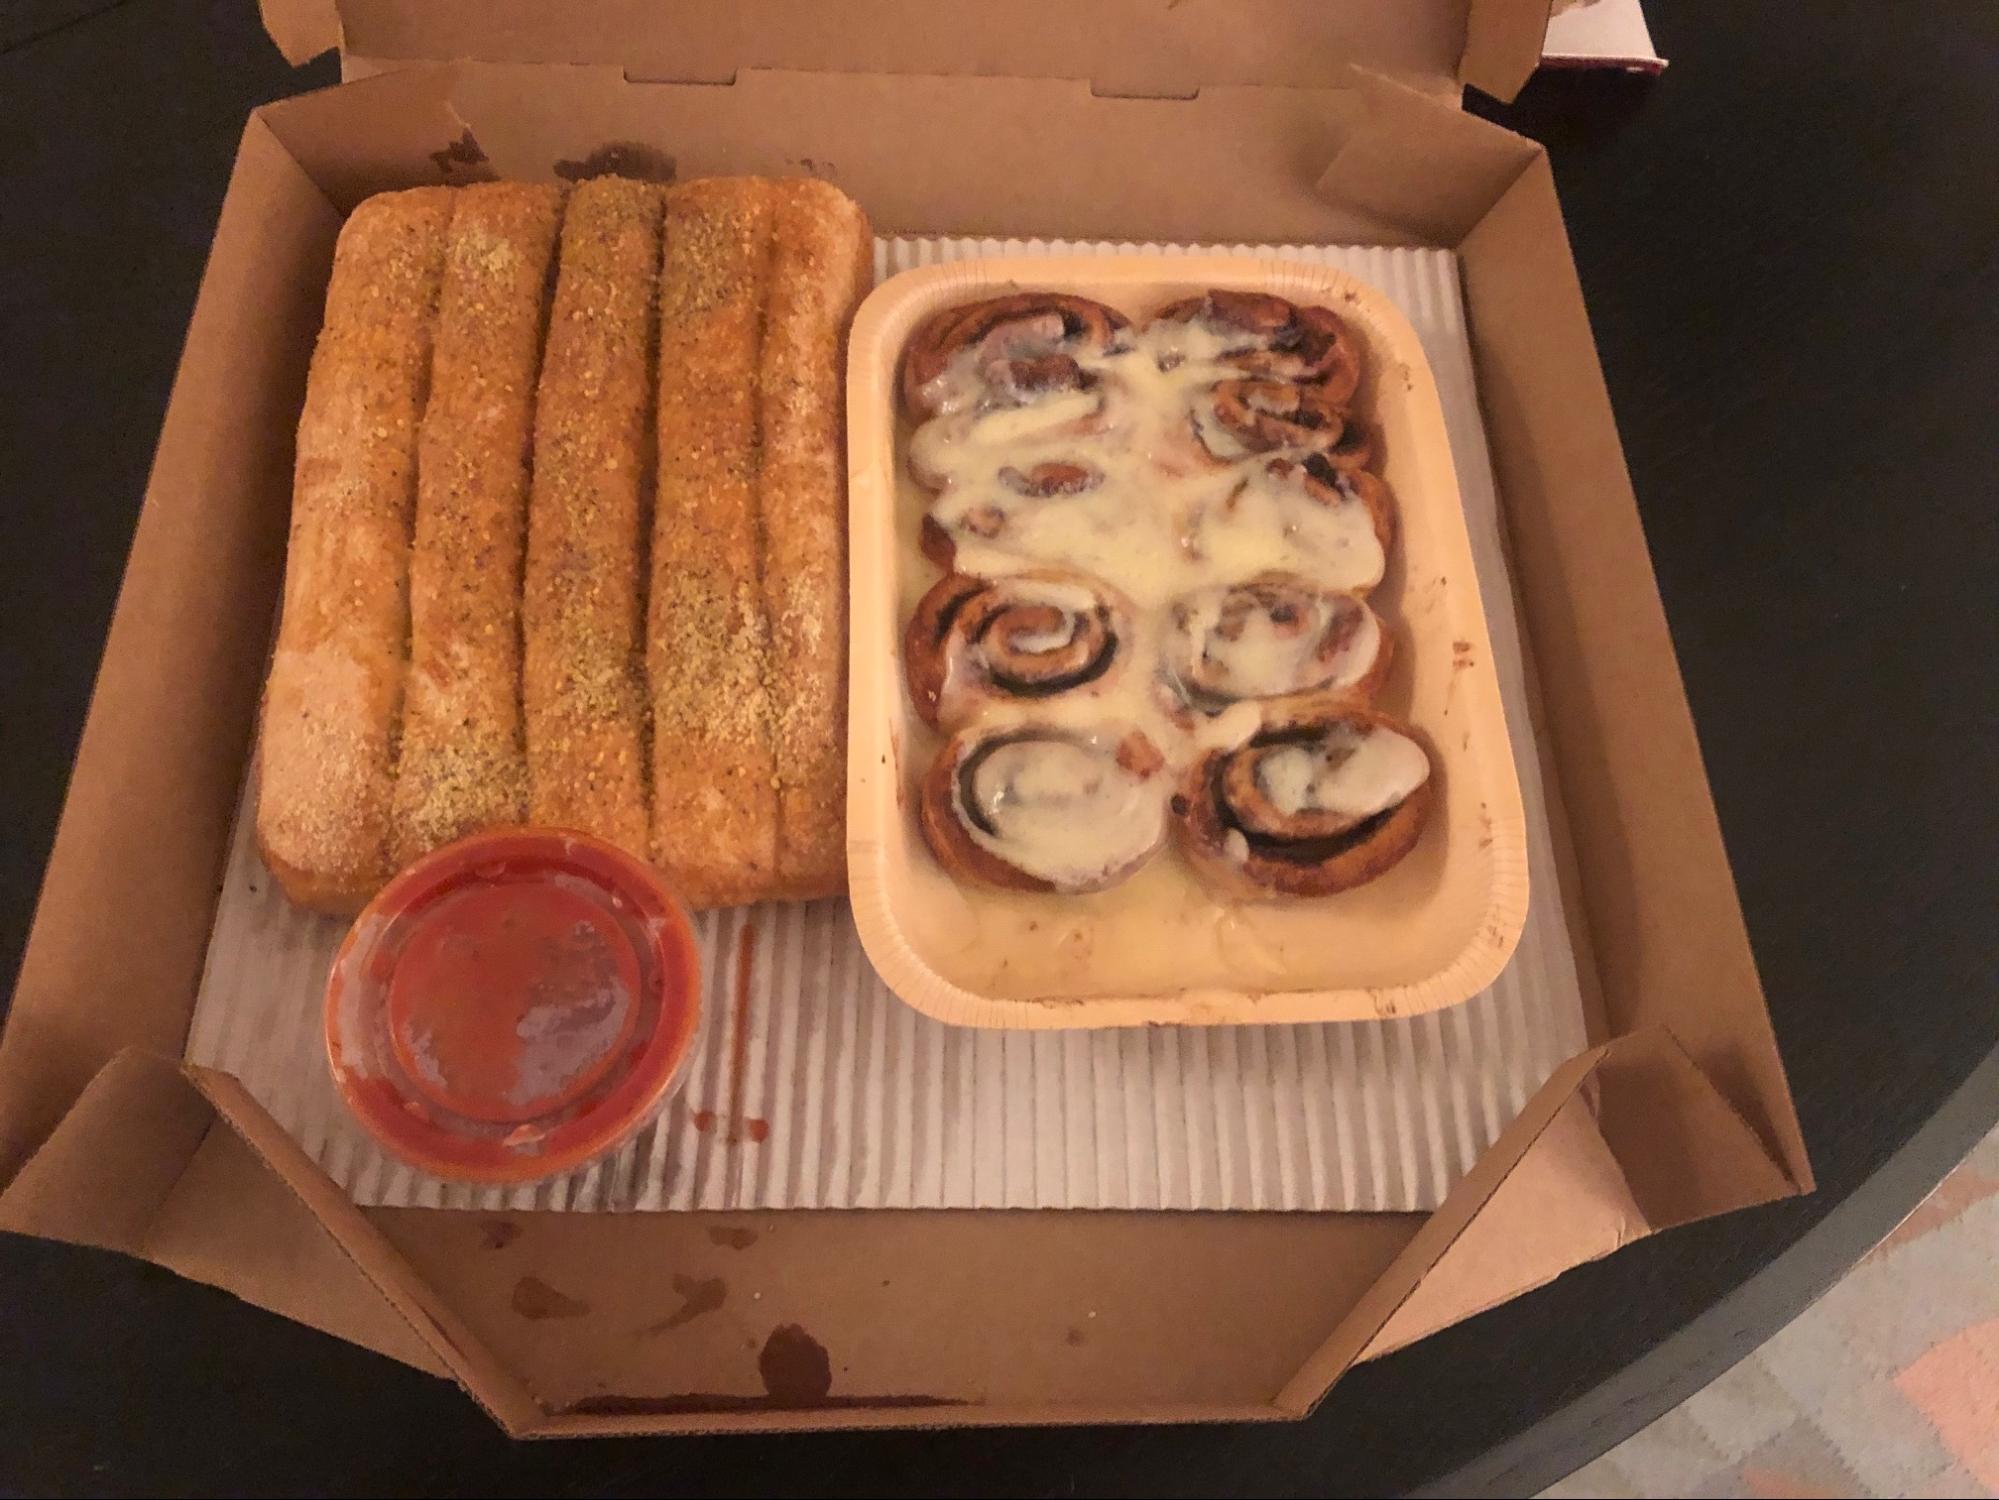 Pizza Hut is selling a triple-decker pizza box